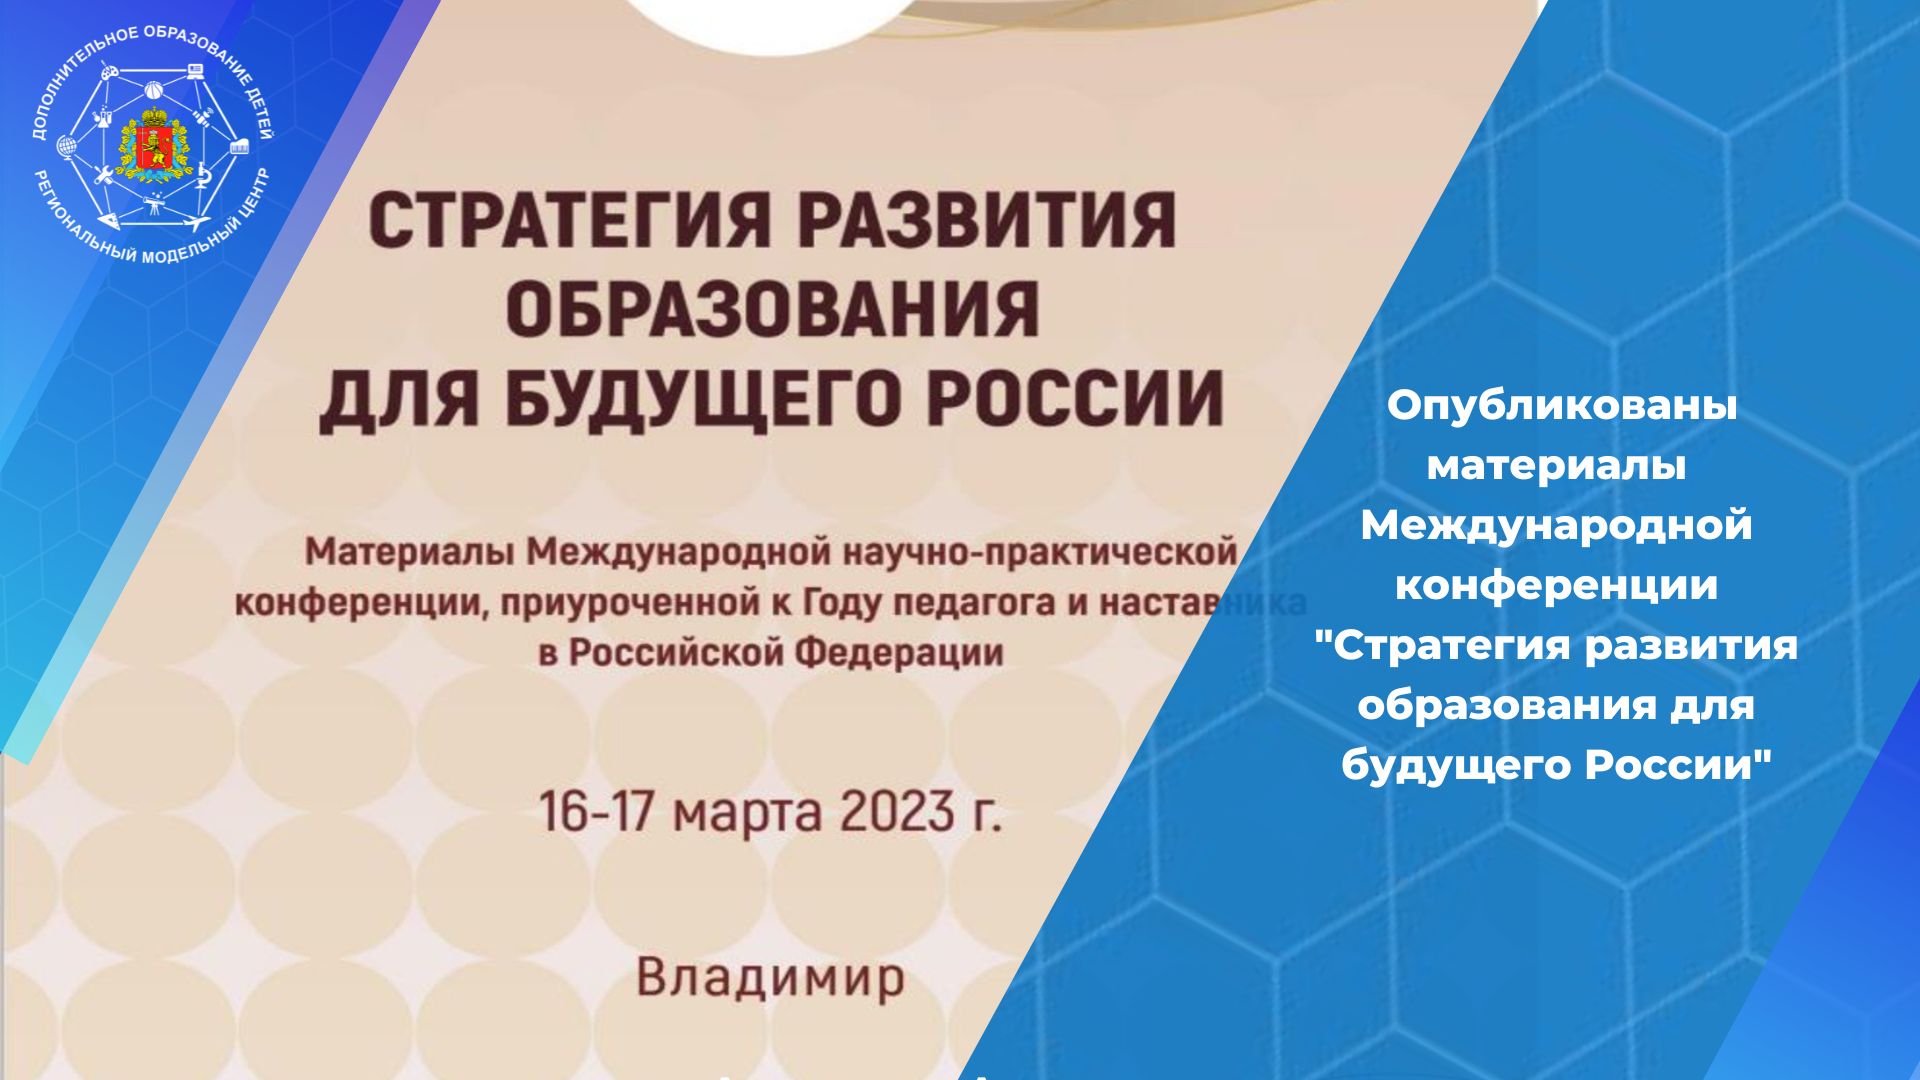 Опубликован электронный сборник материалов Международной научно-практической конференции «Стратегия развития образования для будущего России»